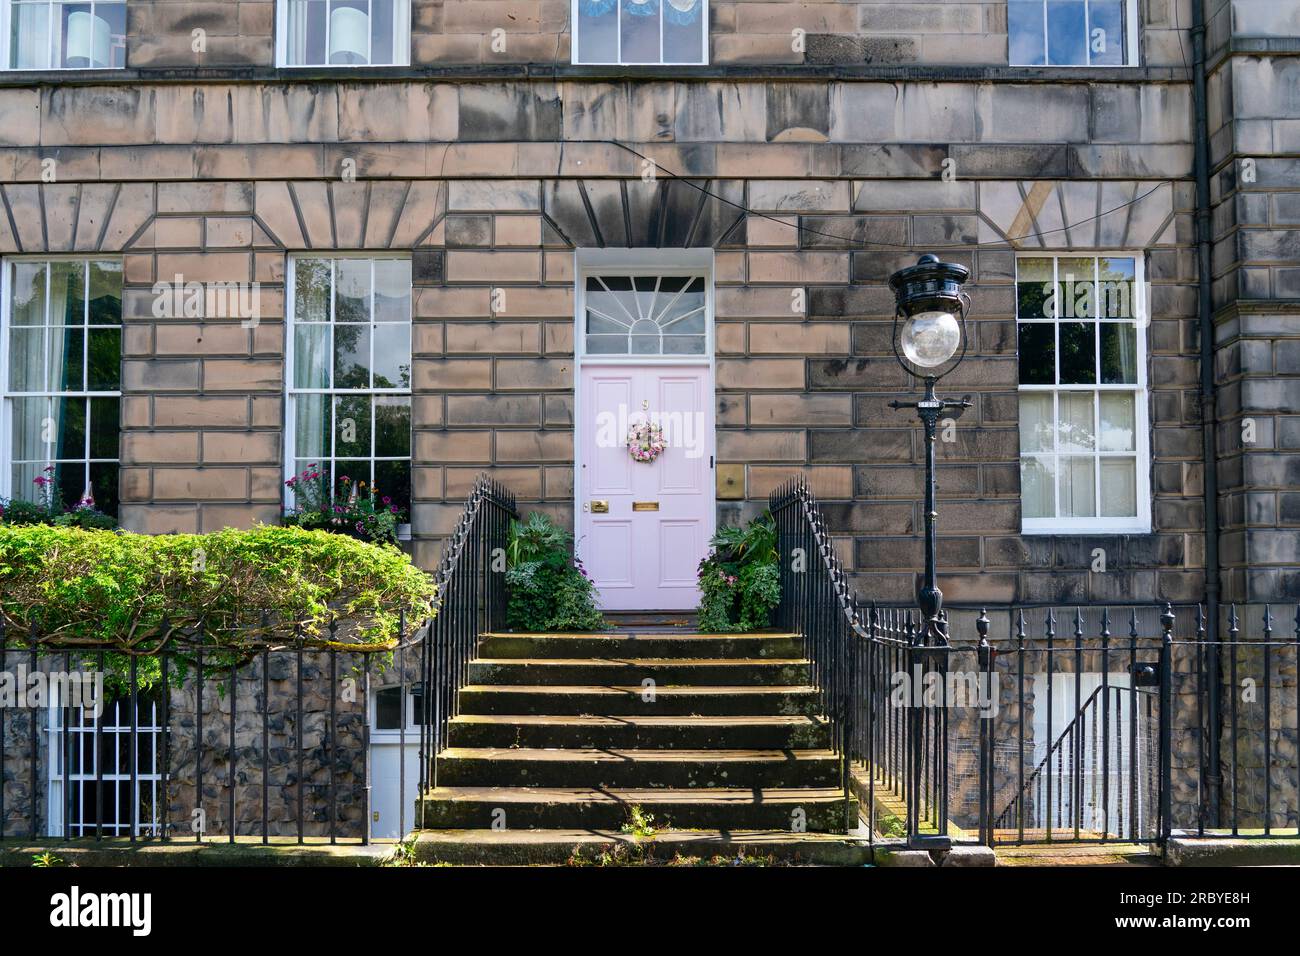 Édimbourg, Écosse, Royaume-Uni, 11 juillet 2023. La célèbre « porte rose » dans la nouvelle ville d’Édimbourg a été repeinte « en blanc cassé » selon la propriétaire Miranda Dickson. La maison se trouve à l'intérieur d'un site du patrimoine mondial de l'UNESCO et le conseil municipal d'Édimbourg, suite à une plainte, a menacé Mme Dickson d'une grosse amende si elle ne repeignait pas la porte d'une couleur plus conservatrice. La porte repeinte est à nouveau jugée inappropriée avec une nouvelle plainte déposée auprès du Conseil. Iain Masterton/Alamy Live News Banque D'Images